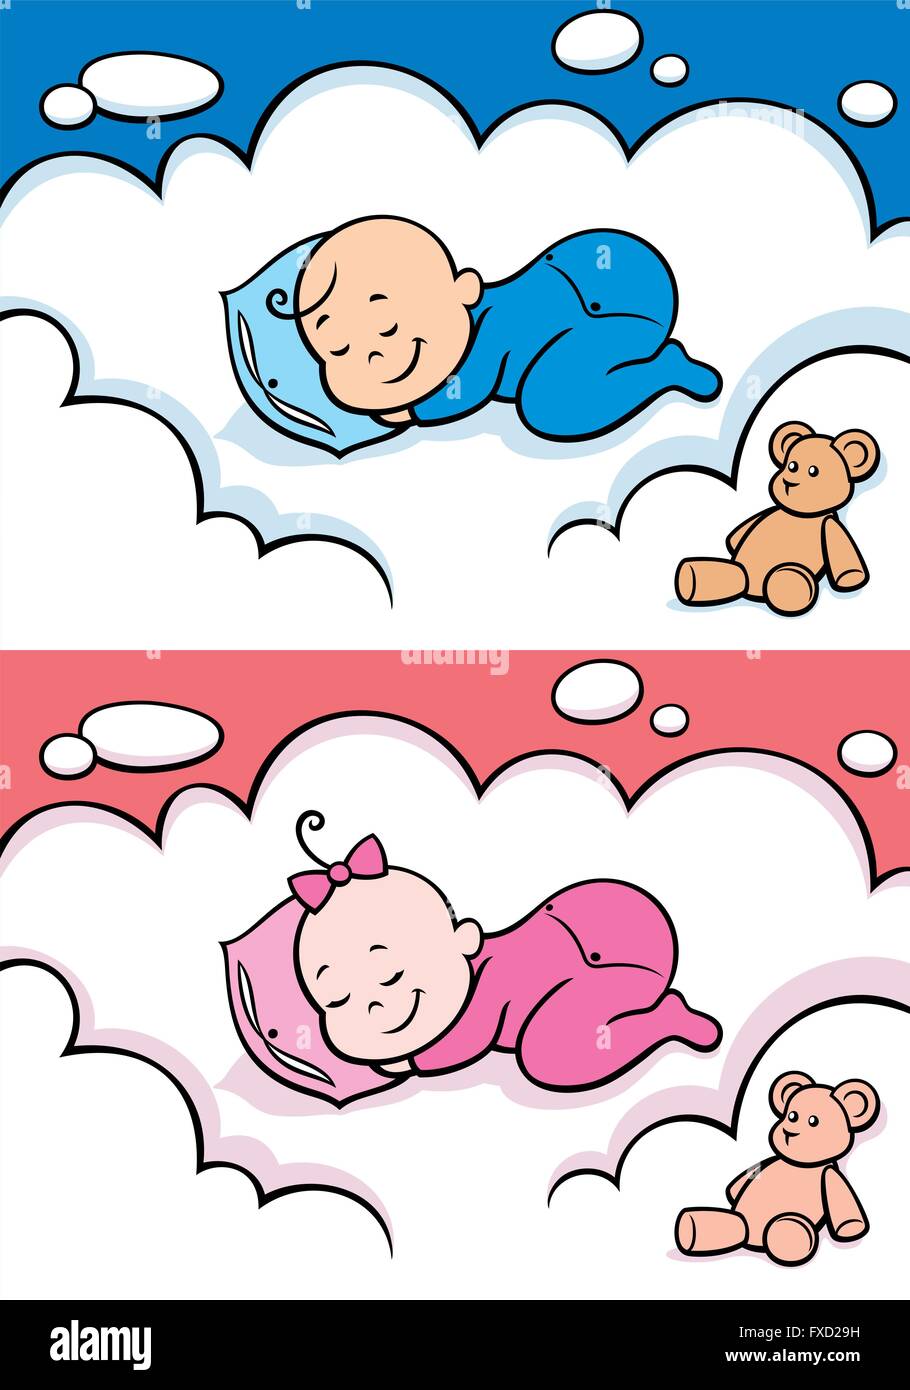 Bébé de dessin animé dormant sur le nuage. L'illustration est en 2 versions pour bébé garçon et bébé fille. Vous pouvez étendre la couleur du ciel Illustration de Vecteur